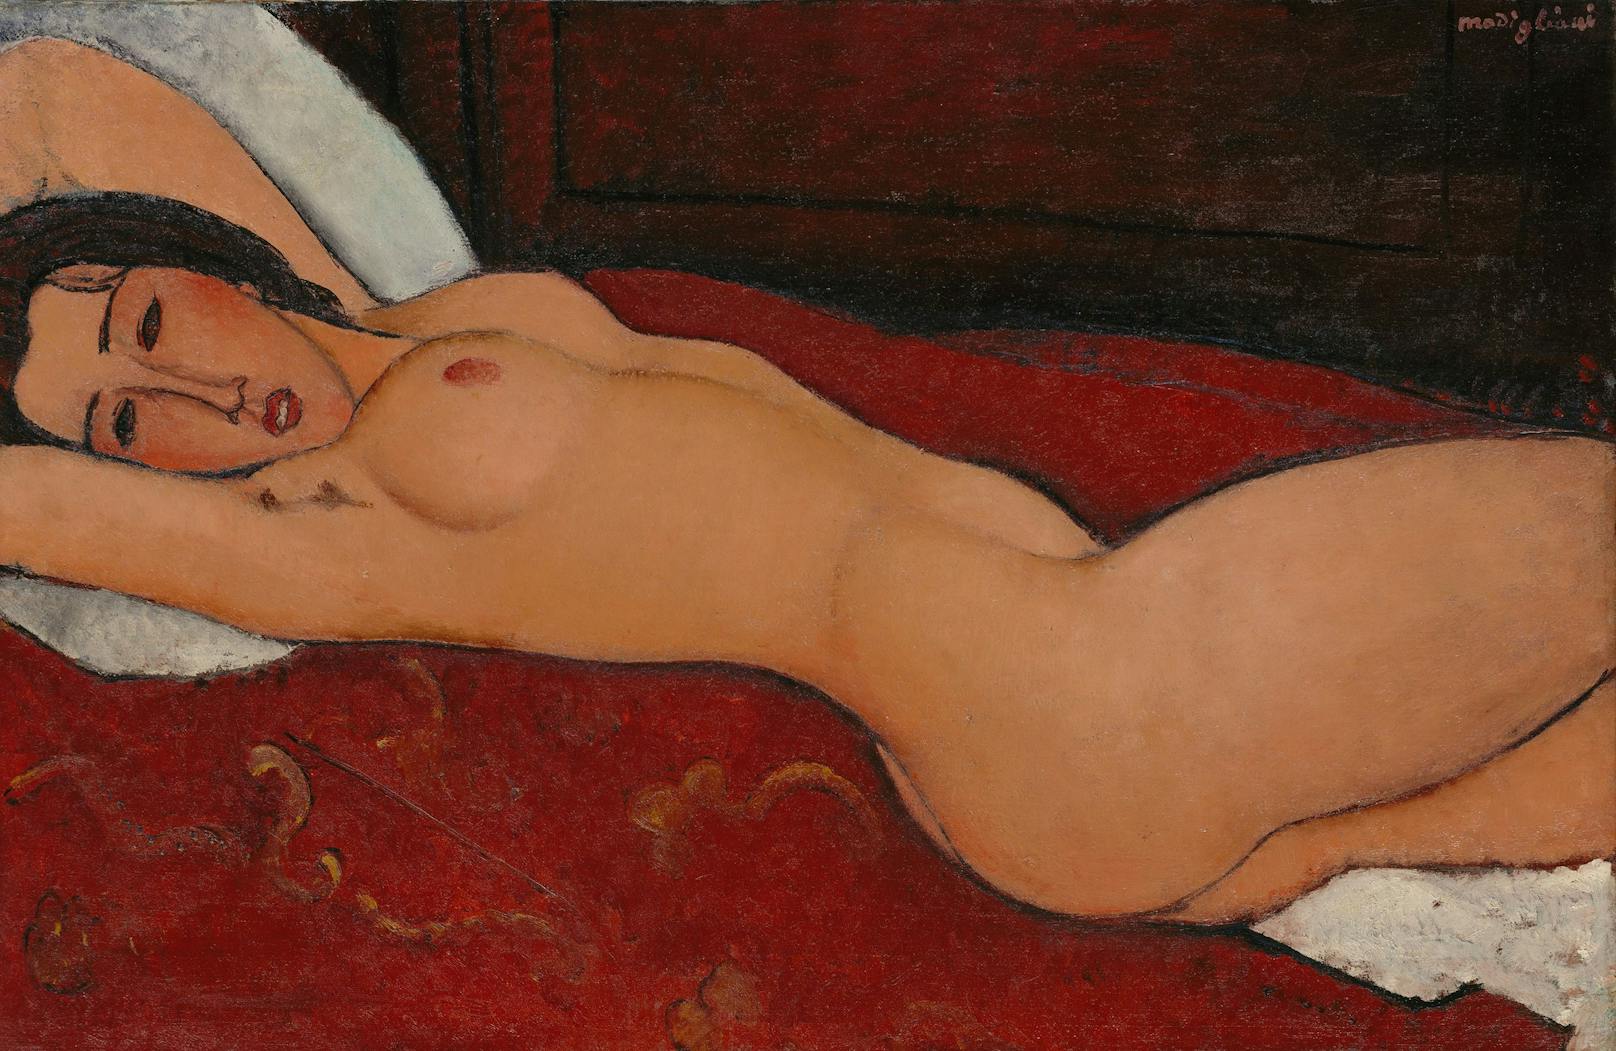 Die Ausstellung zeigt mehr als 80 Werke von Modigliani. Der italienische Künstler war für seine skandalösen Akte verschrien.&nbsp;